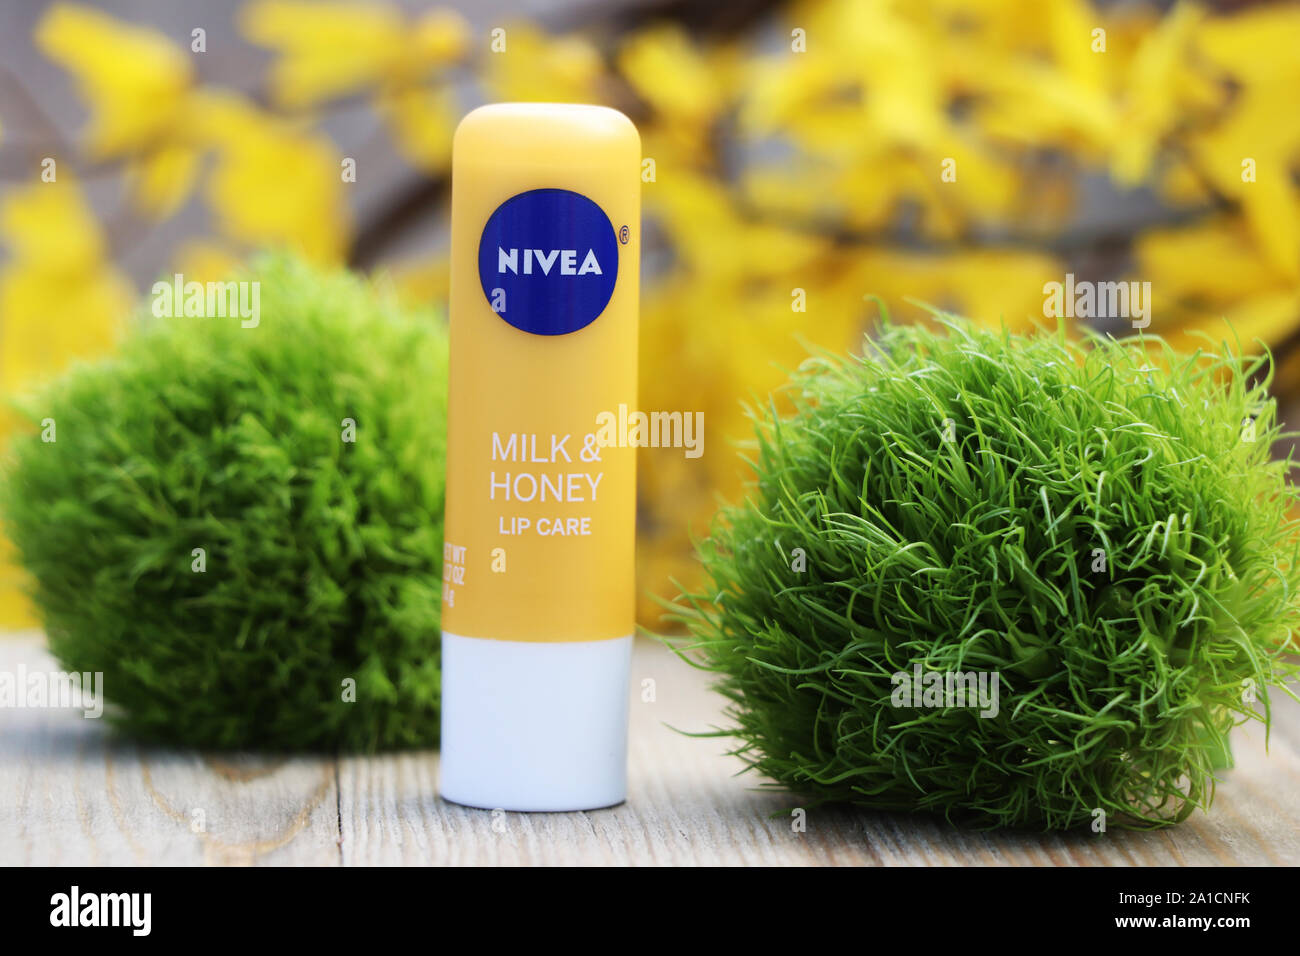 Nivea lip care product Stock Photo